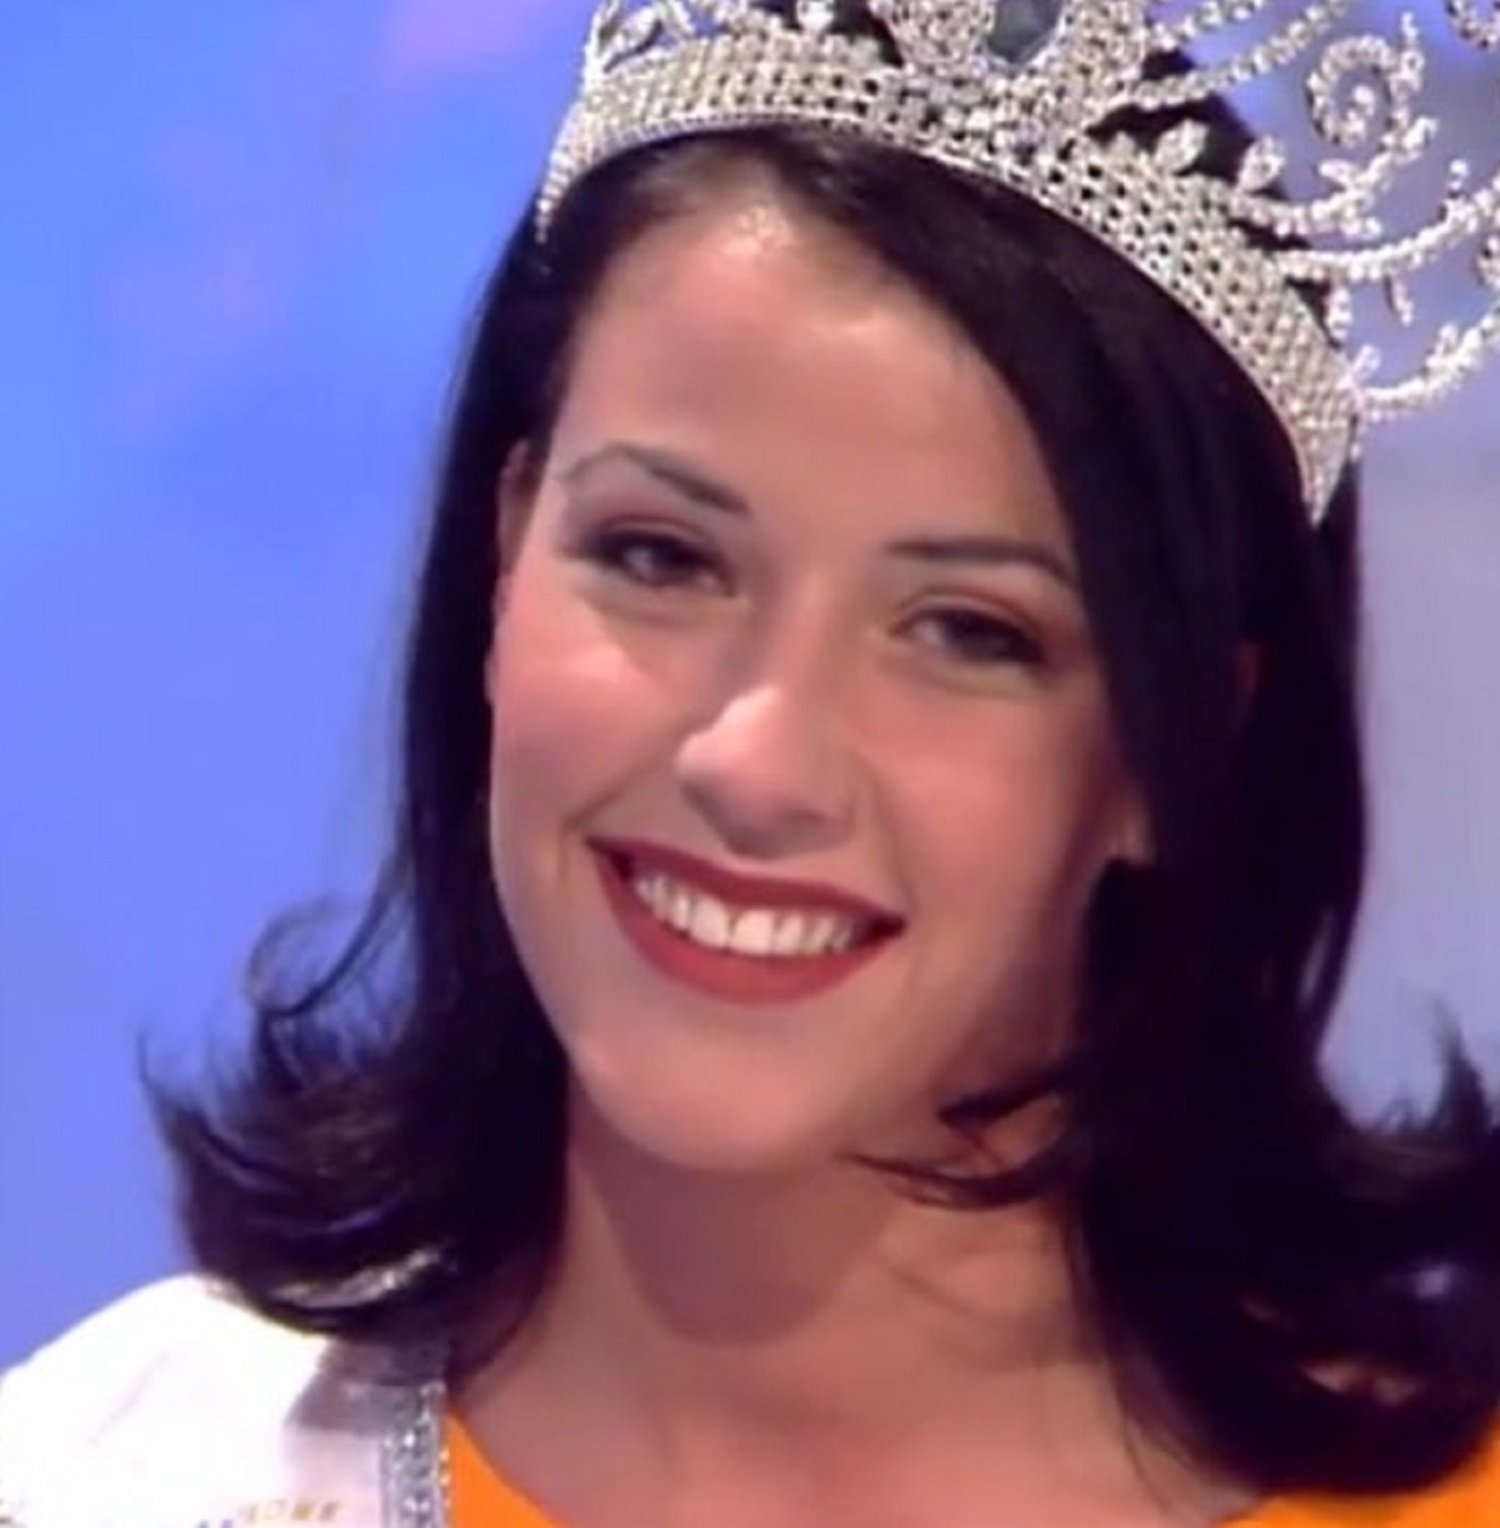 El drama d'una Miss Espanya: "Tengo cáncer"